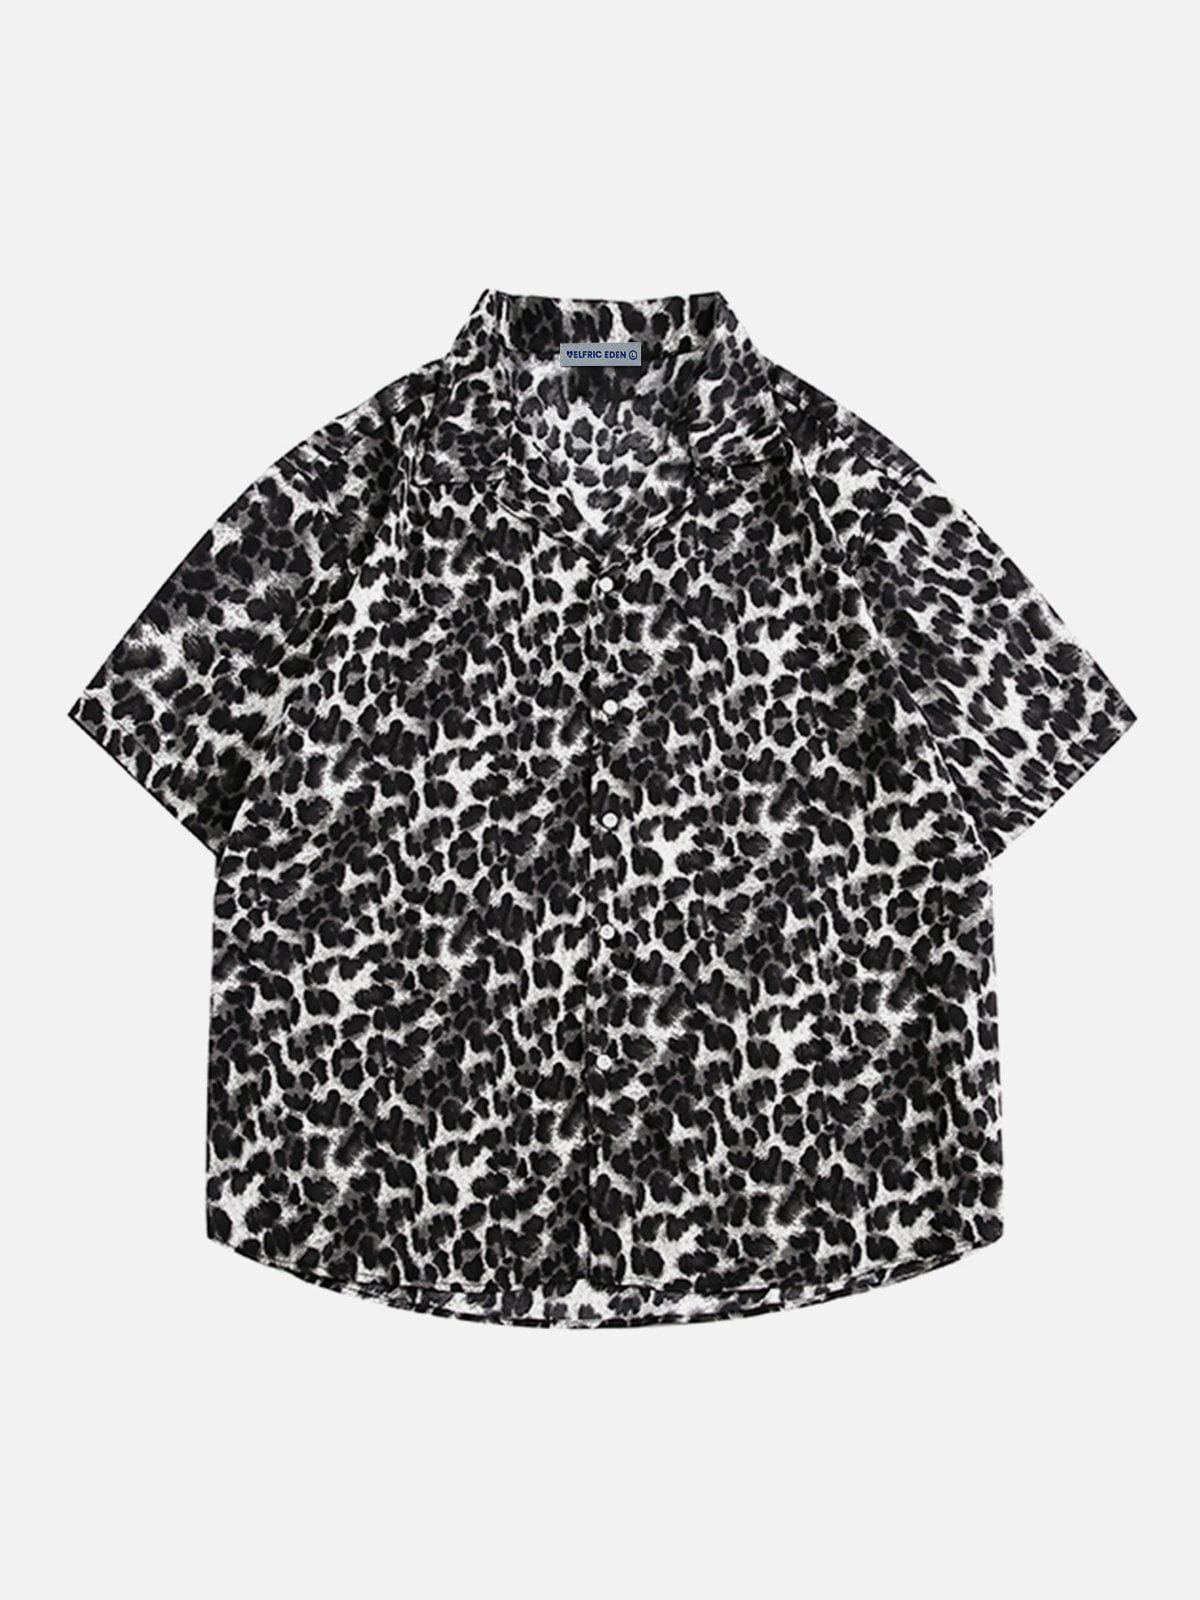 Aelfric Eden Black Leopard Print Short Sleeve Shirt